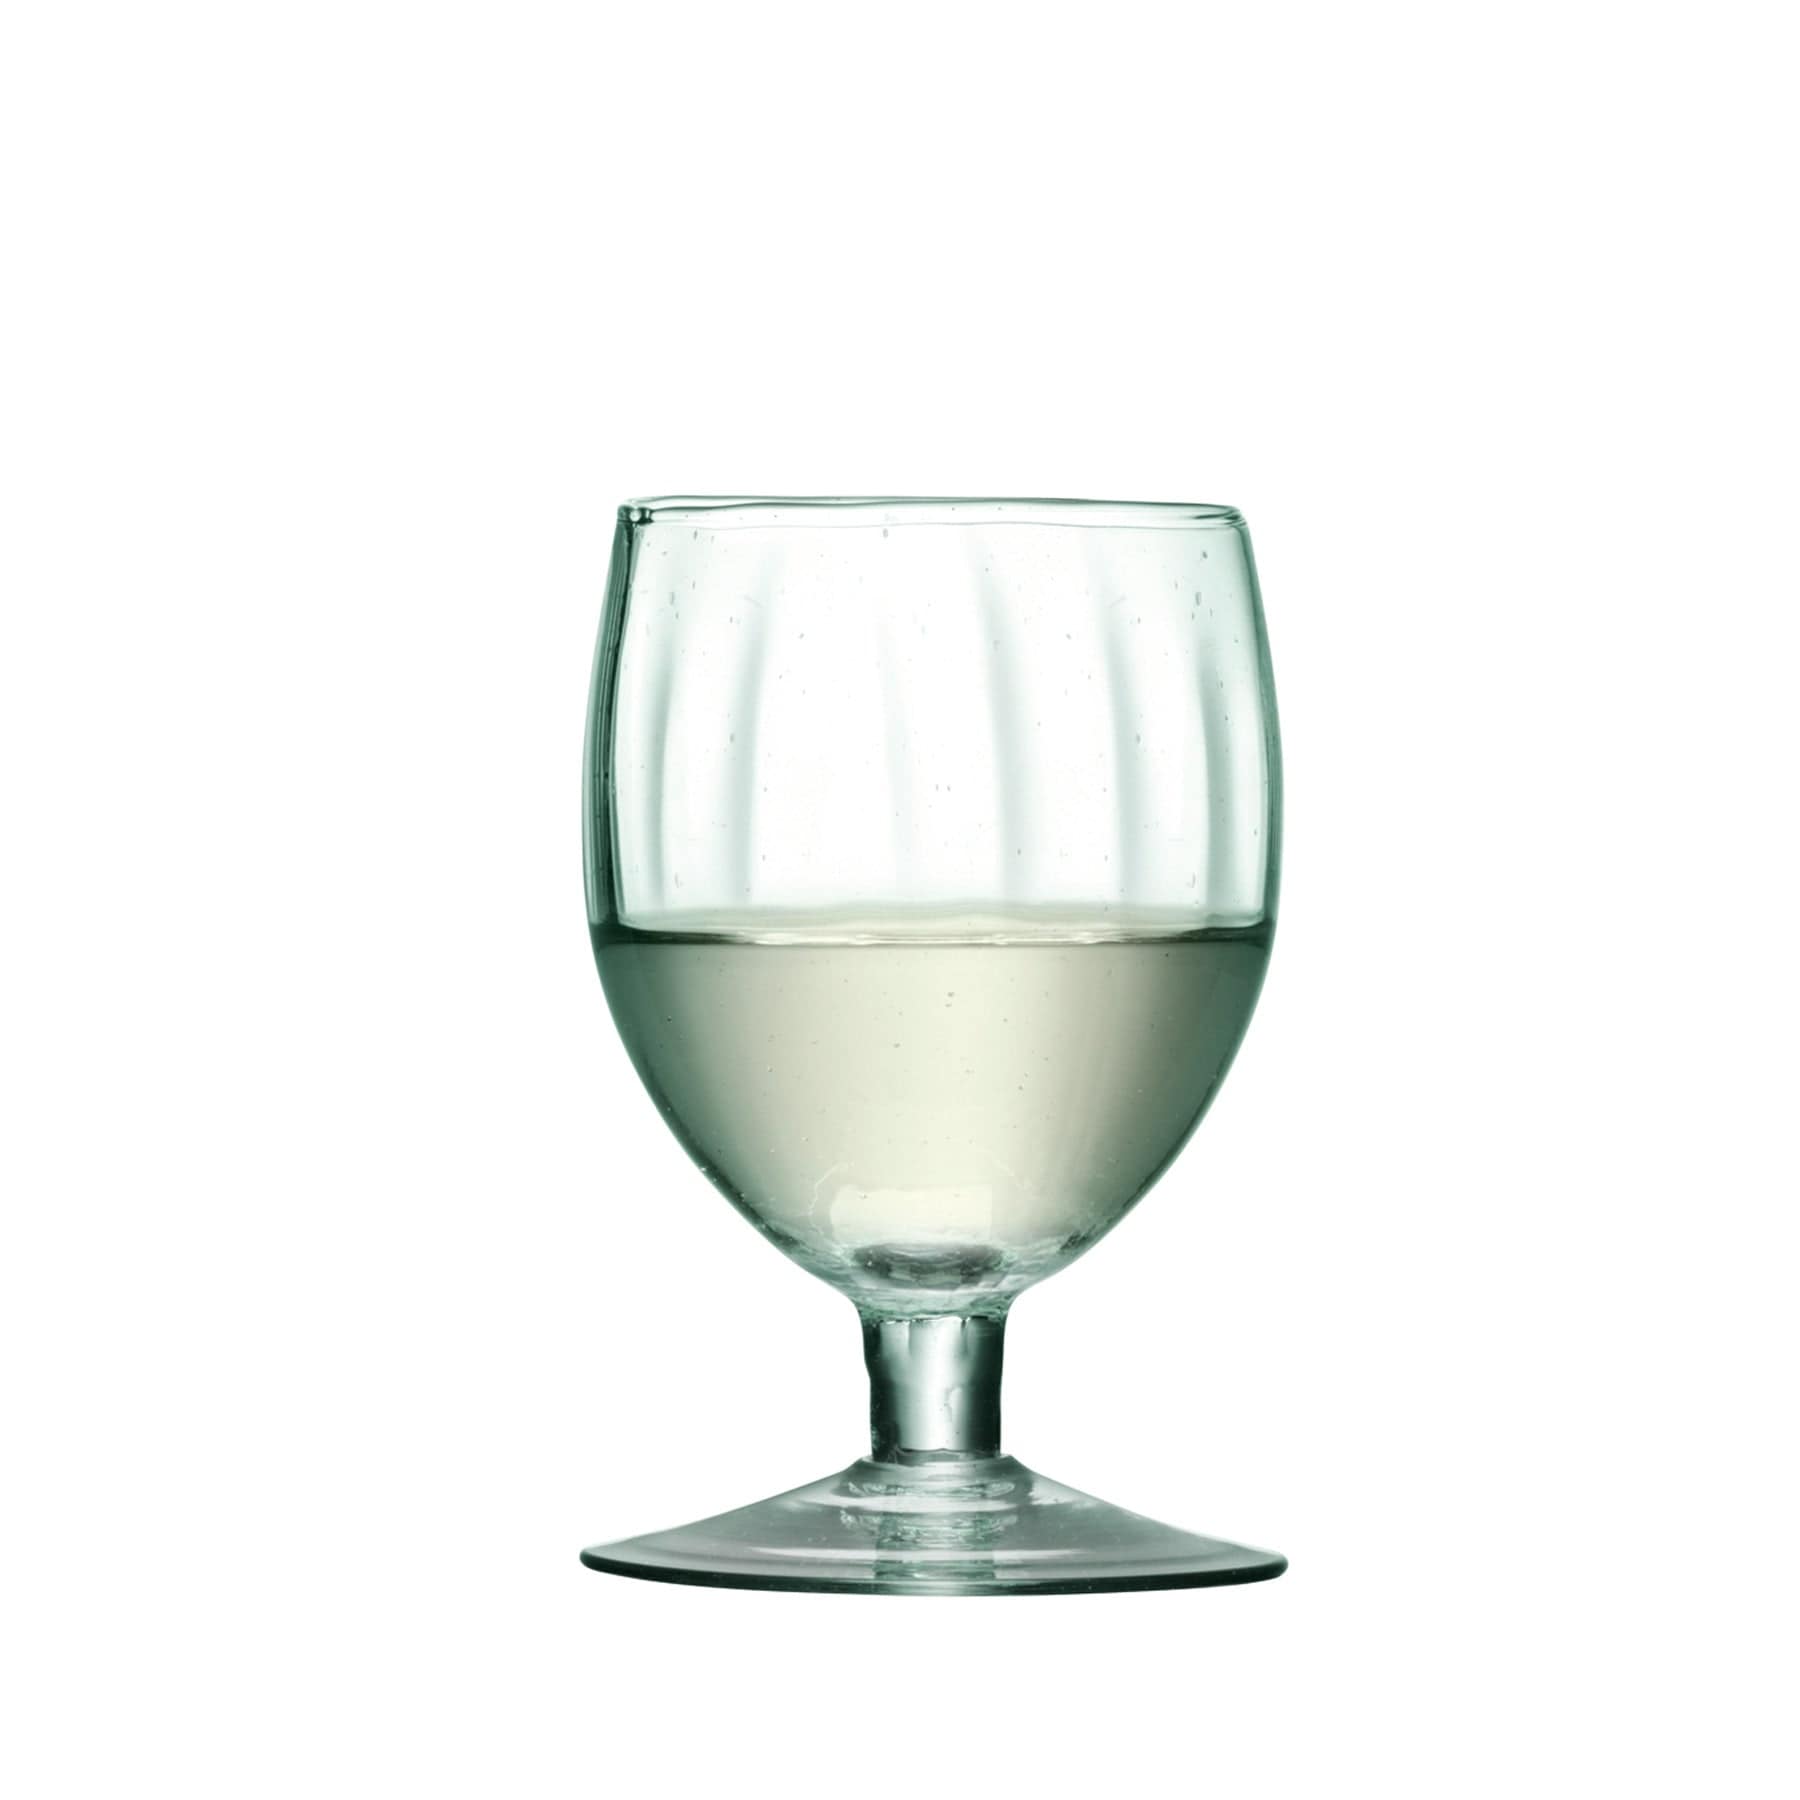 Mia wine glass 350ml x 4